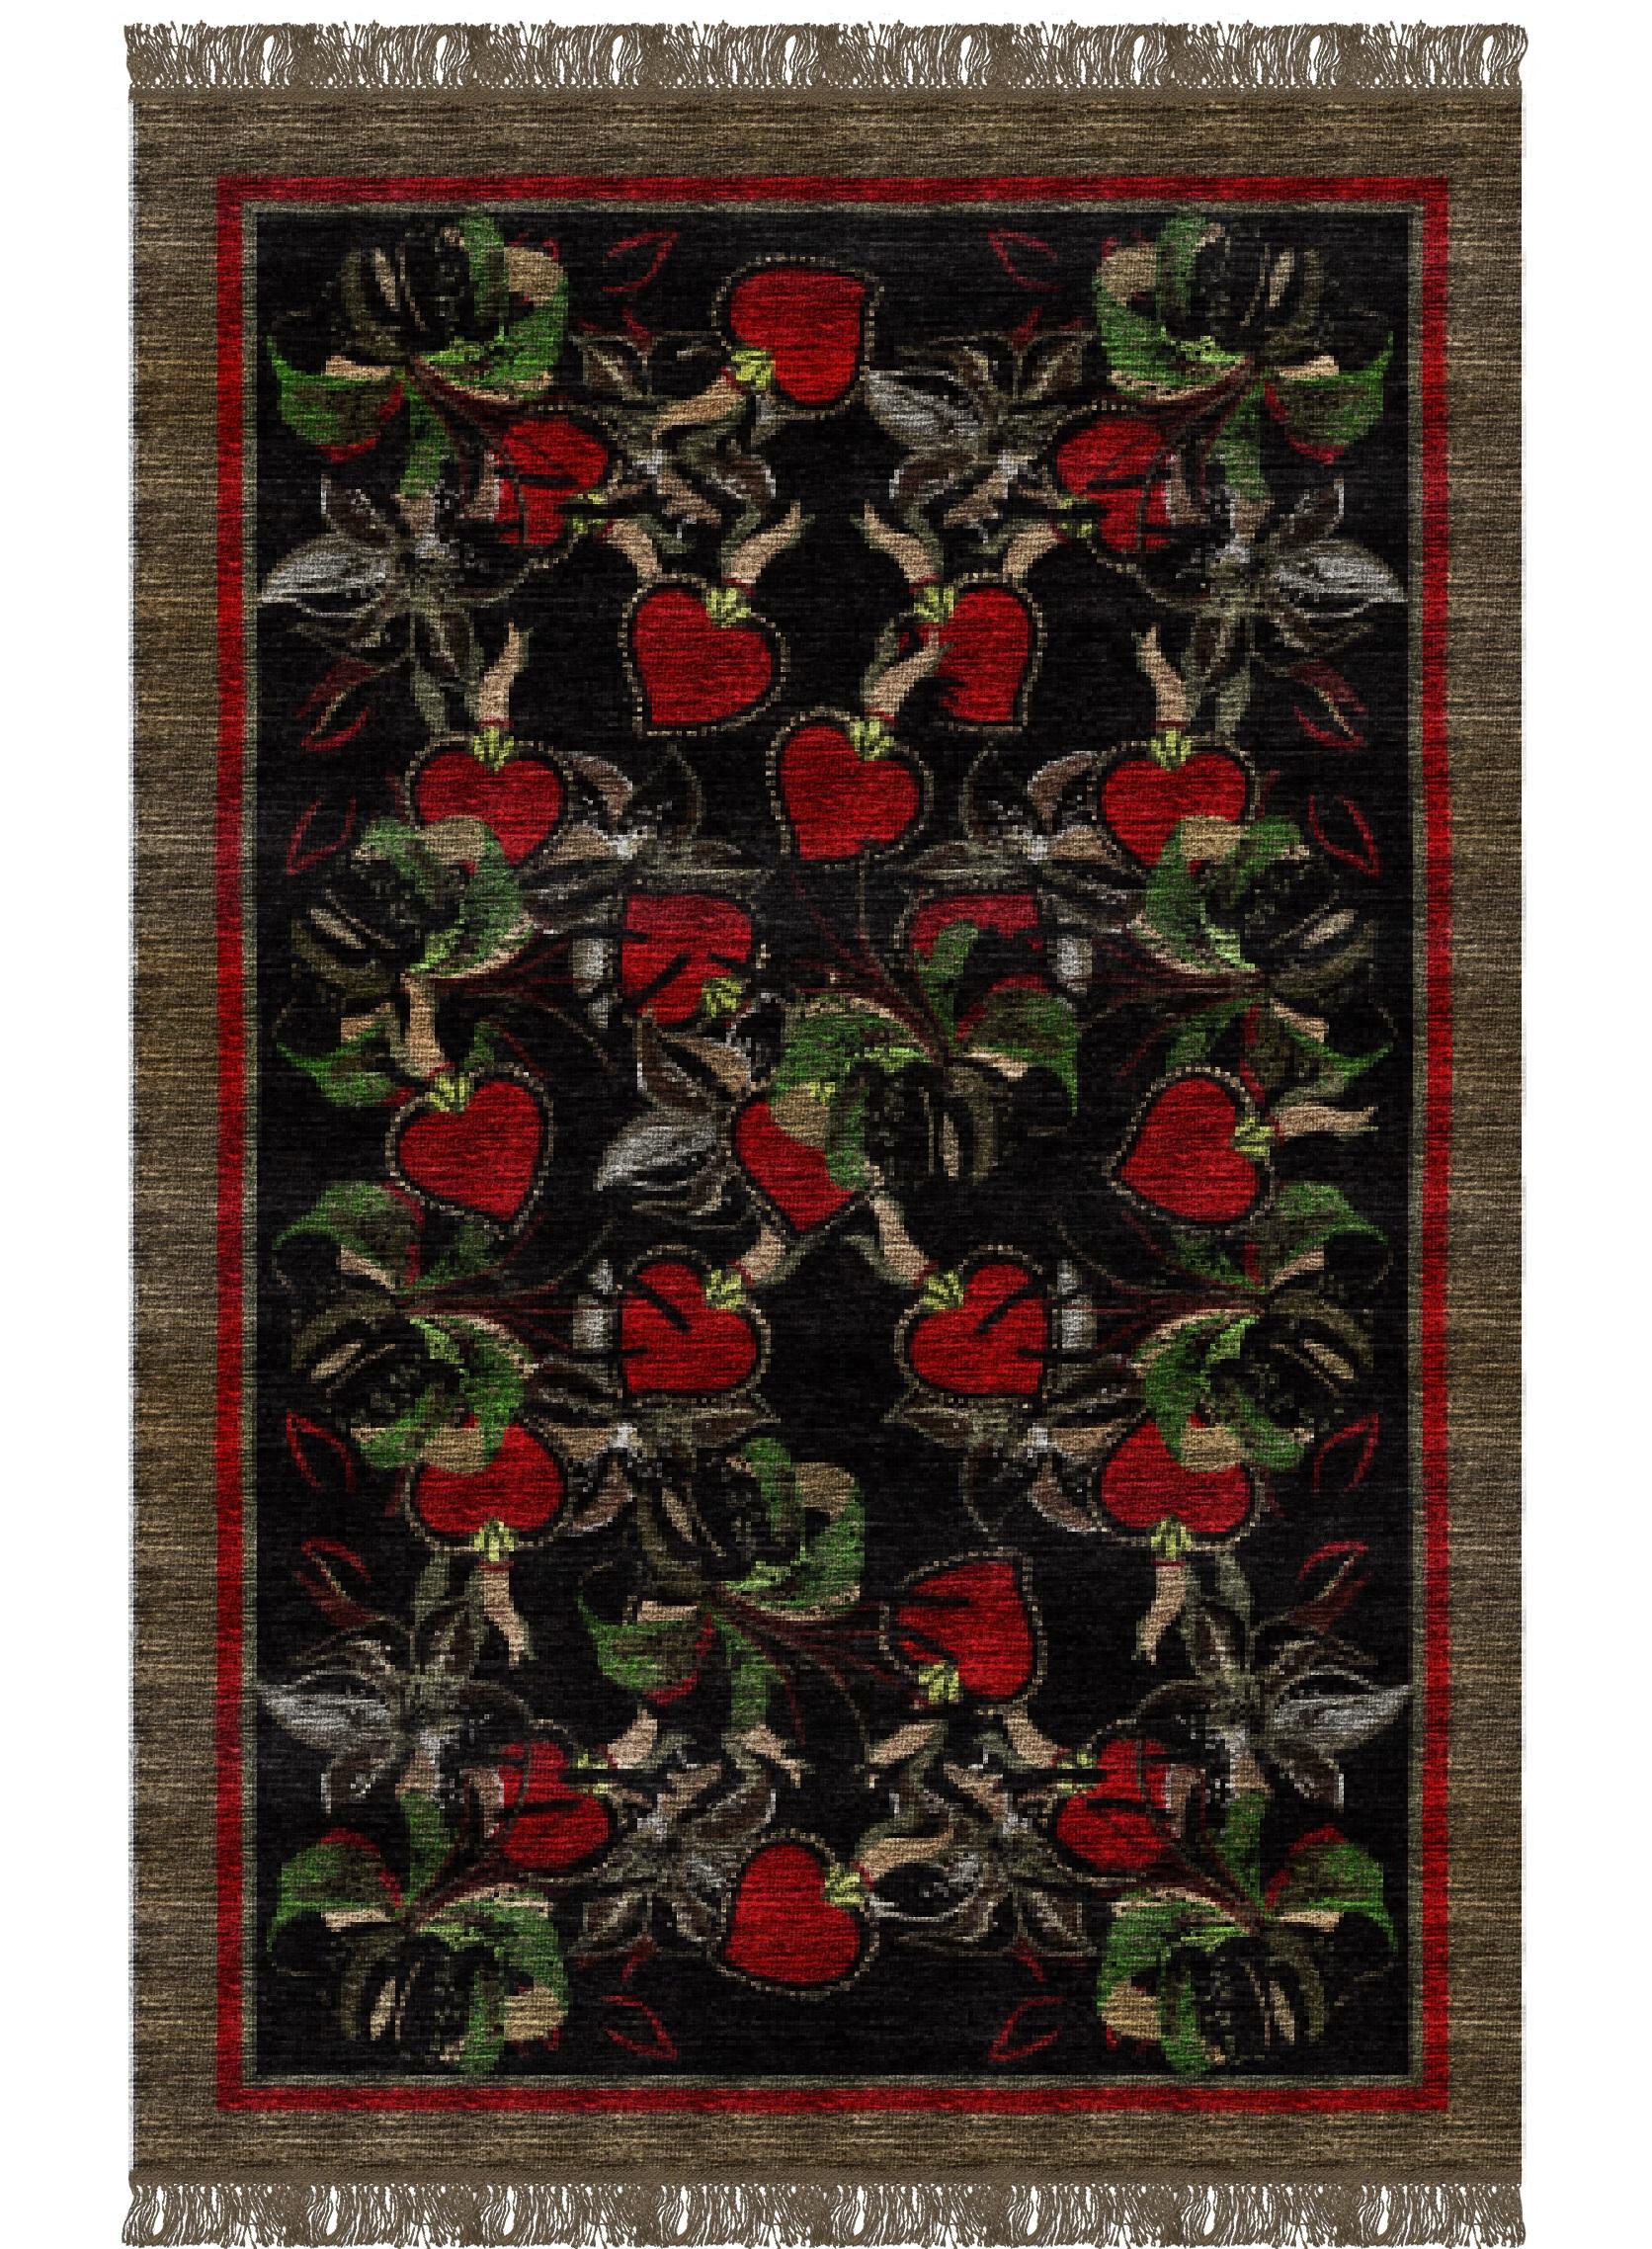 Cuori-Teppich III von Giulio Brambilla
Abmessungen: D 300 x B 200 x H 0,5 cm
MATERIALIEN: NZ-Wolle, Melange-Garn

Dieser Teppich, benannt nach dem italienischen Wort für 